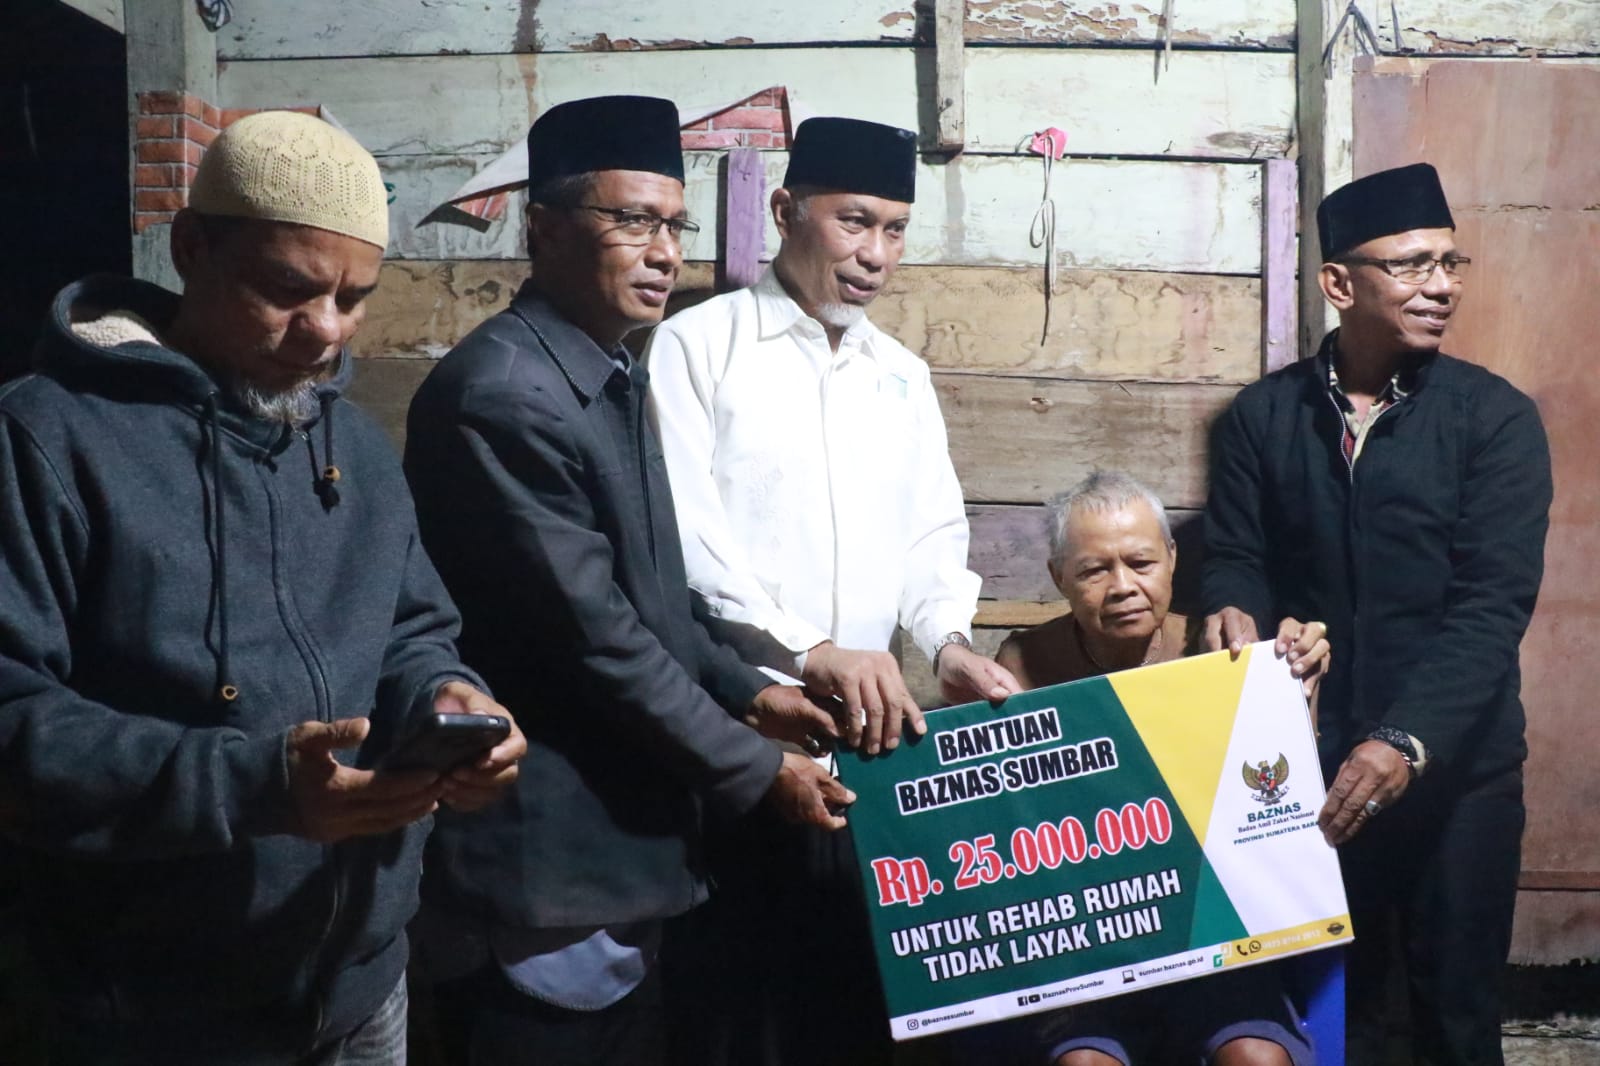 Singgah Sahur di Sungai Lundang, Gubernur Mahyeldi Salurkan Bantuan Untuk Warga Pra Sejahtera